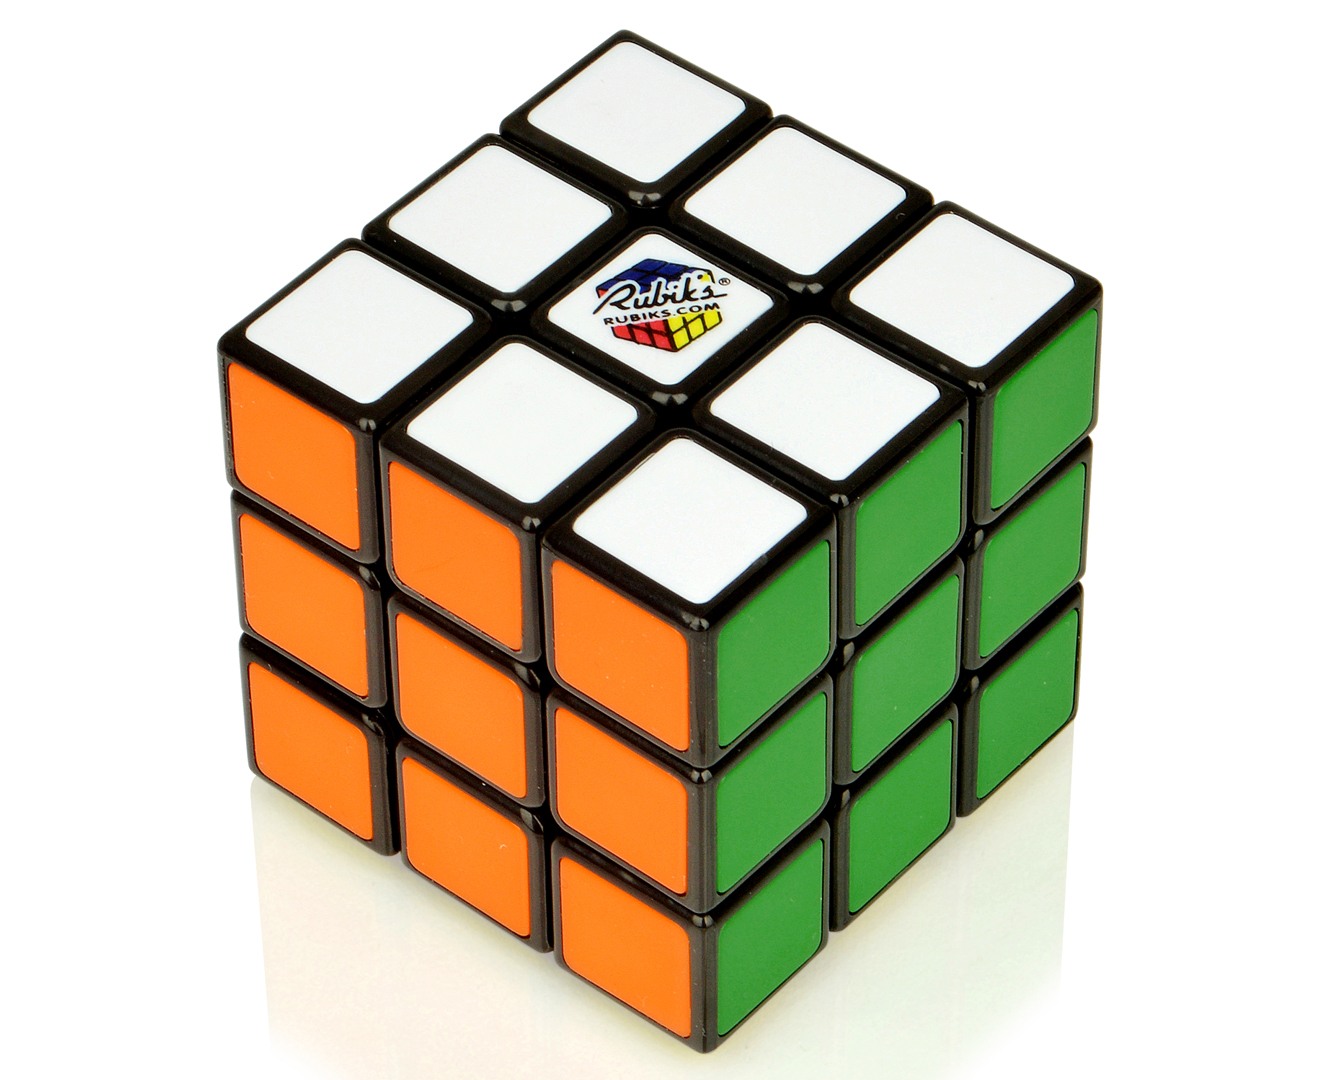 Rubik's 3x3 Cube Catch.com.au rubix cube kmart. 